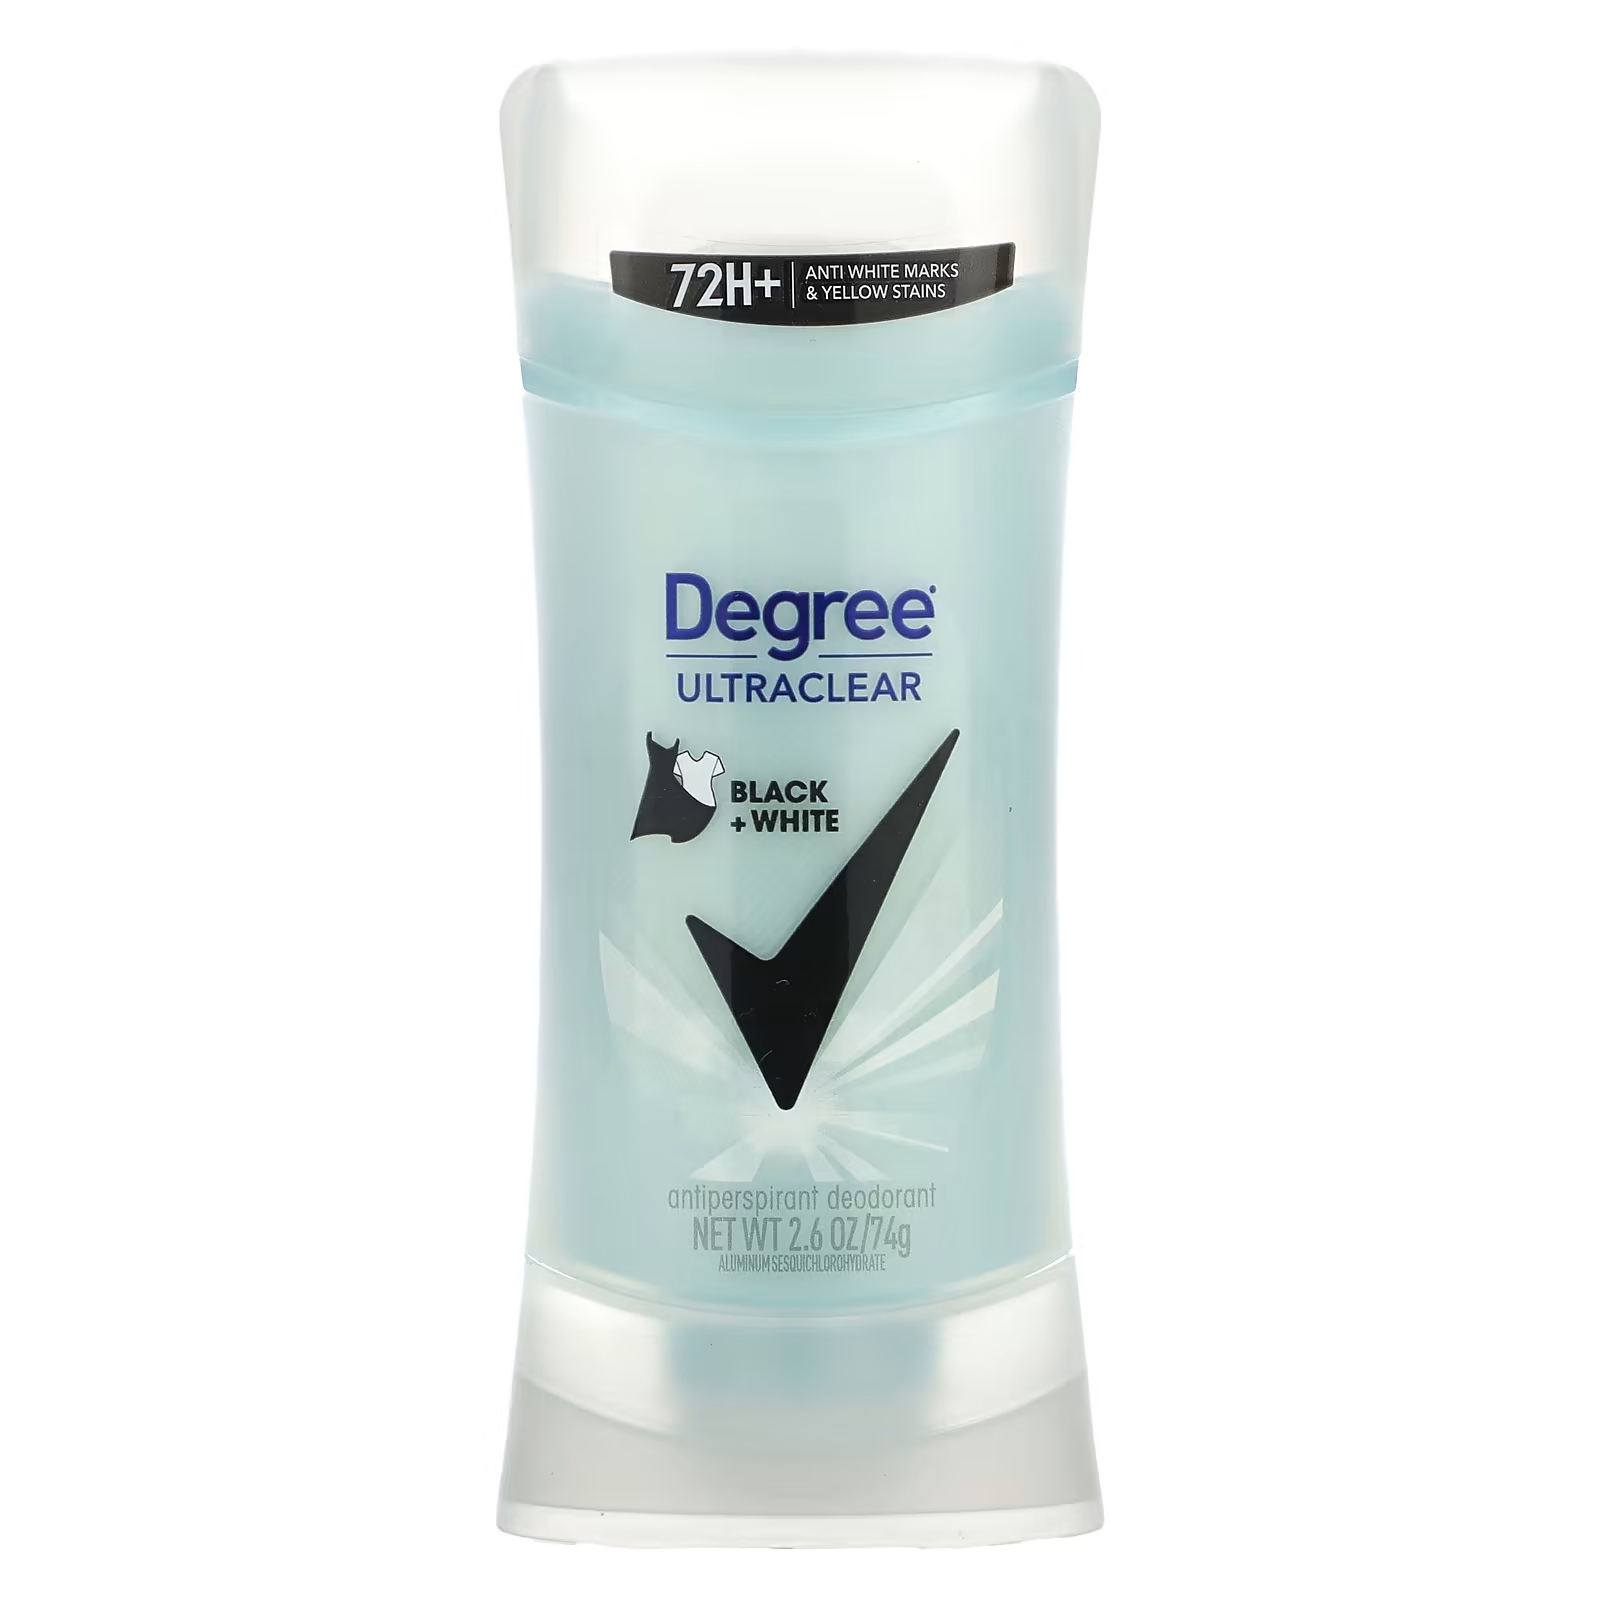 Дезодорант-антиперспирант Degree UltraClear Black + White дезодорант антиперспирант motionsense degree advanced 72 часа прозрачный порошок